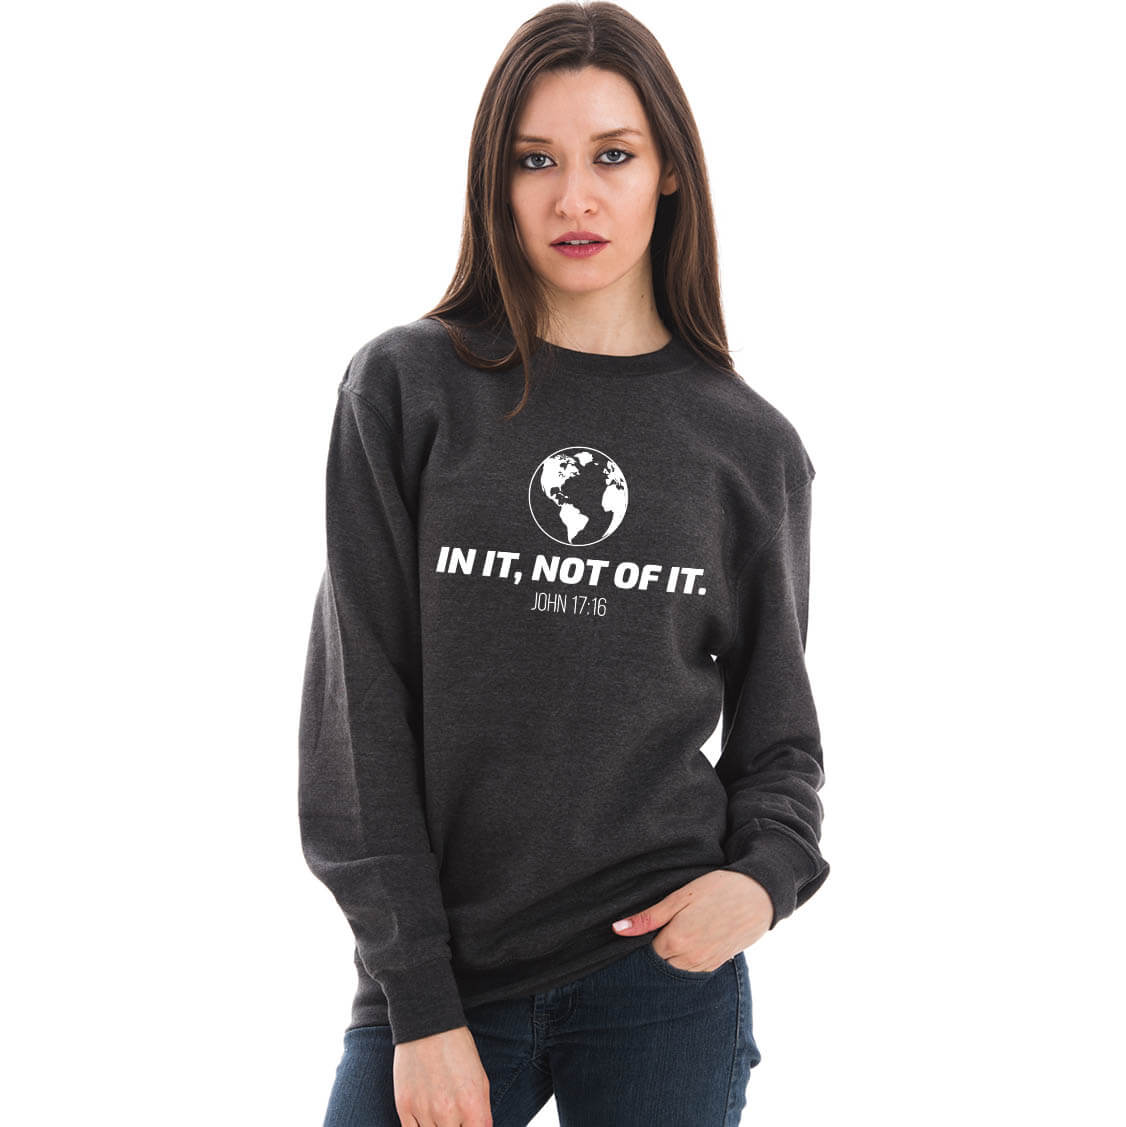 In It, Not Of It Crewneck Unisex Sweatshirt